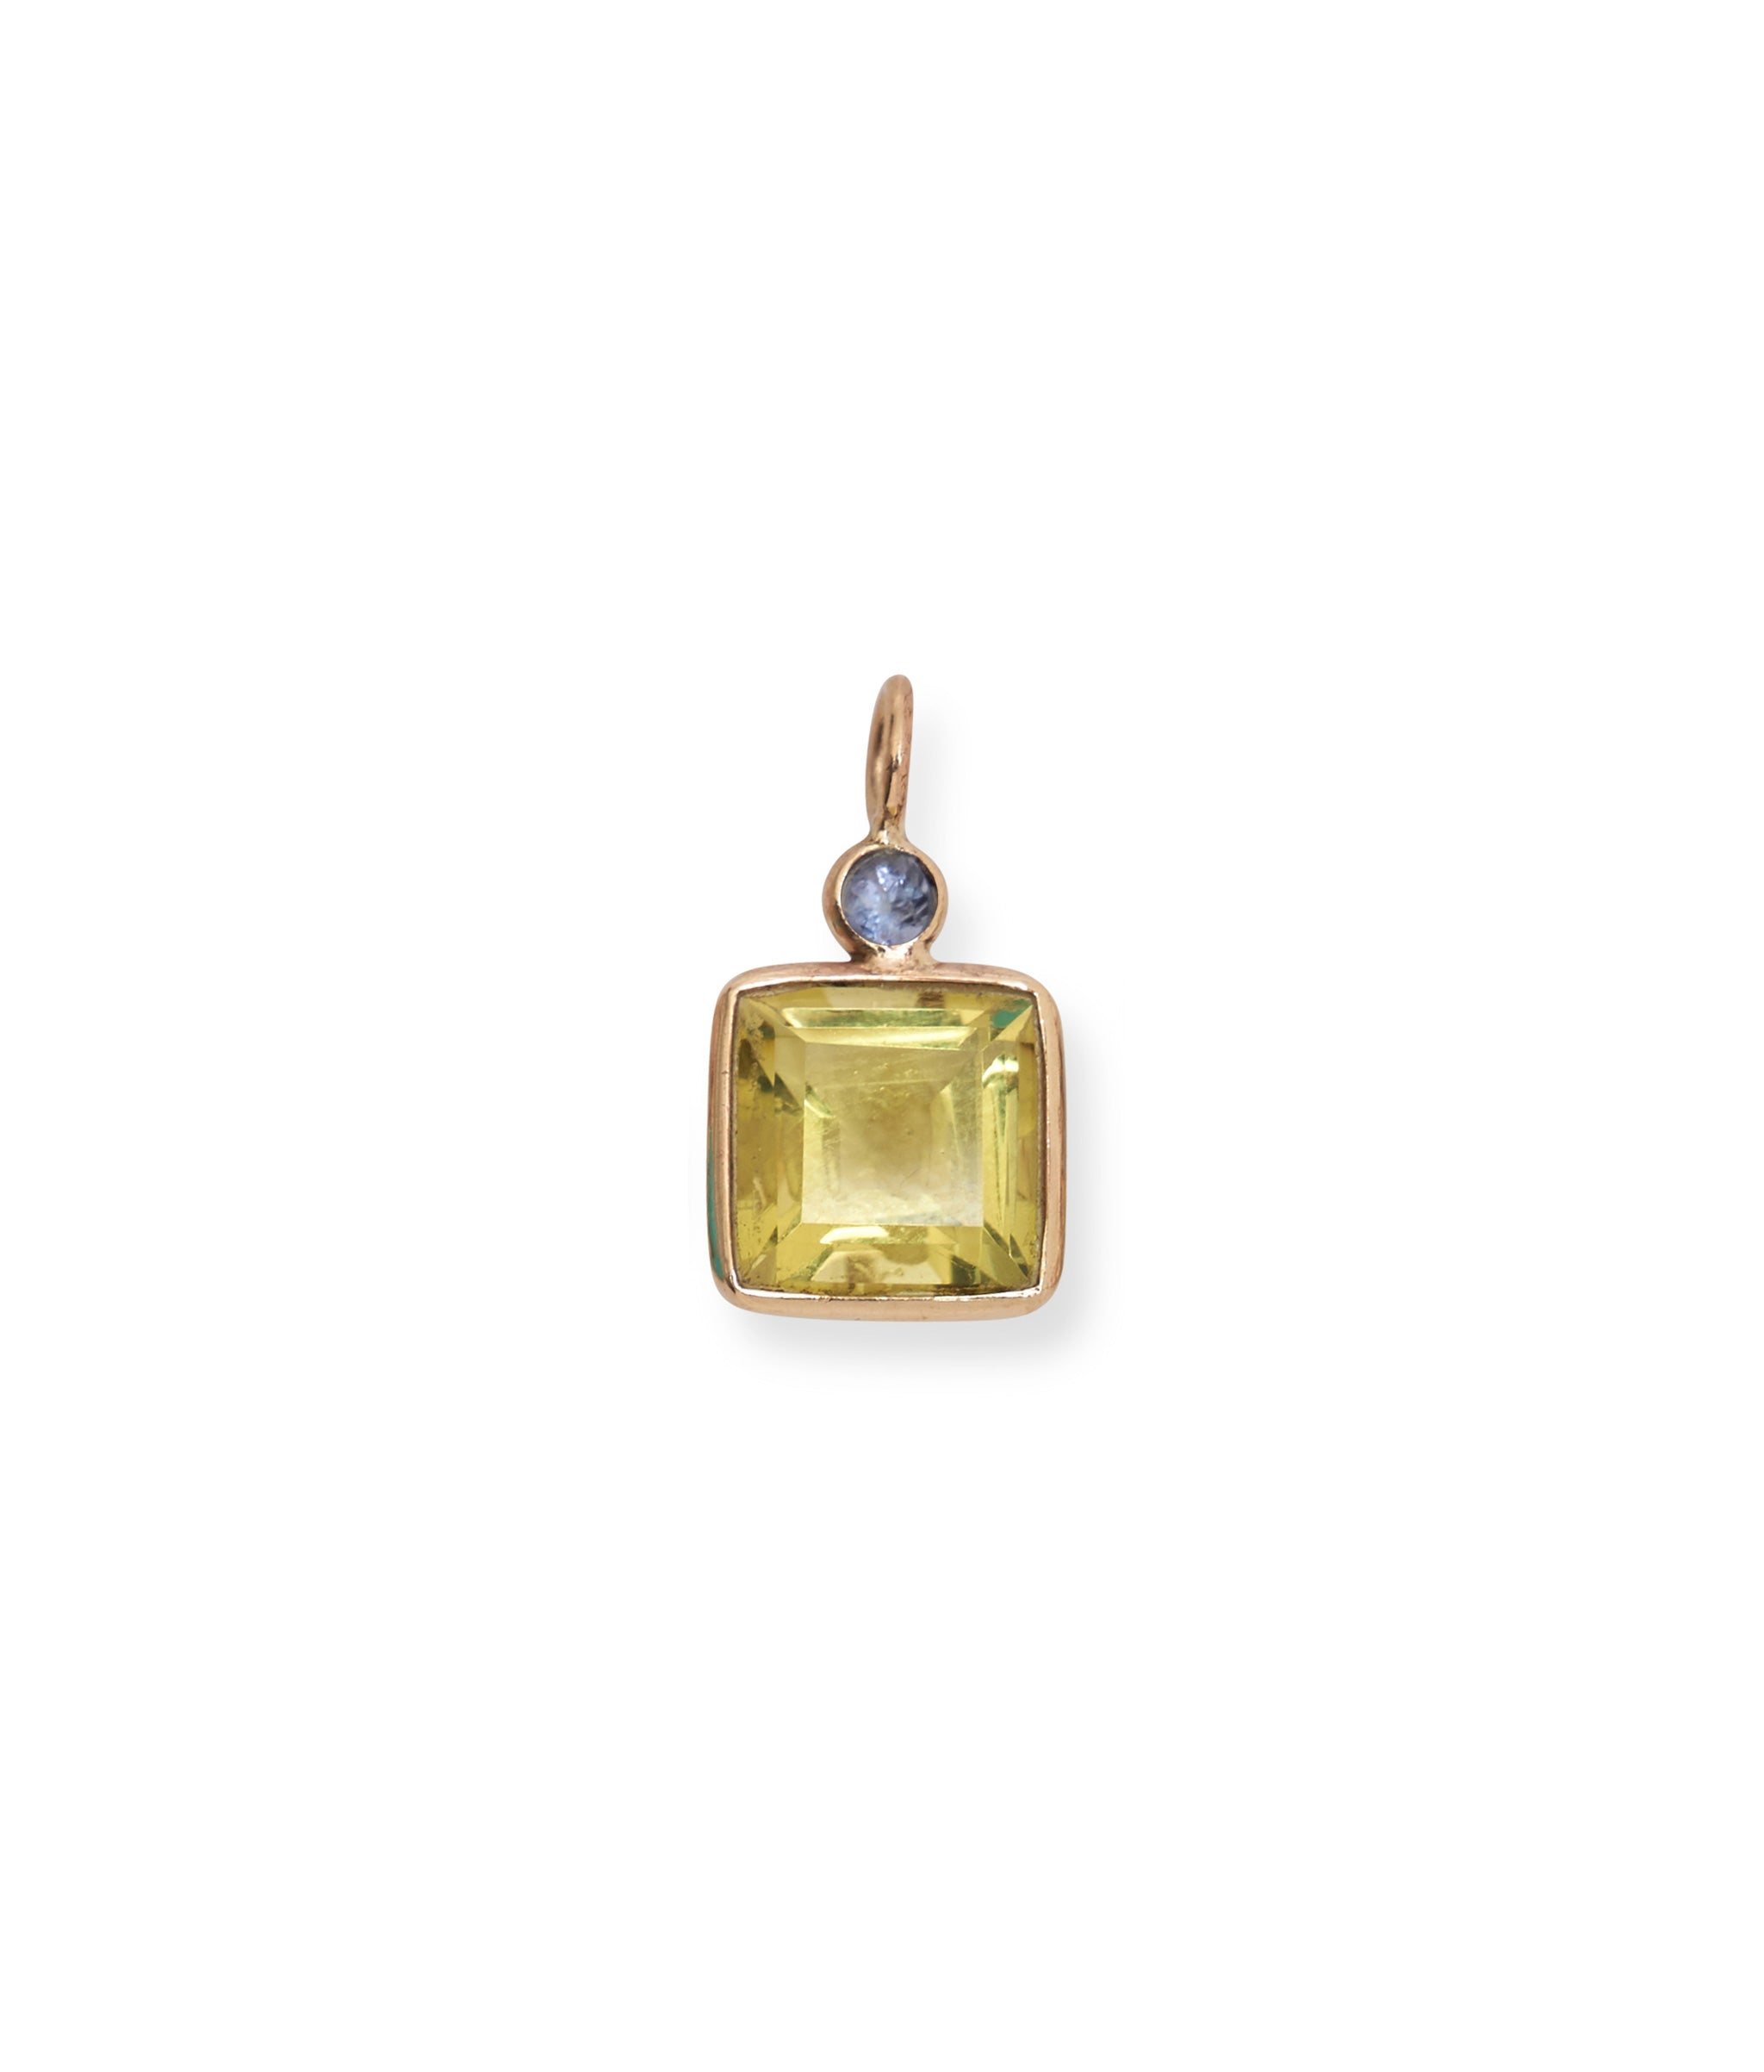 Tanzanite & Lemon Quartz 14k Gold Necklace Charm. Faceted tanzanite and lemon quartz square charm with gold bezels